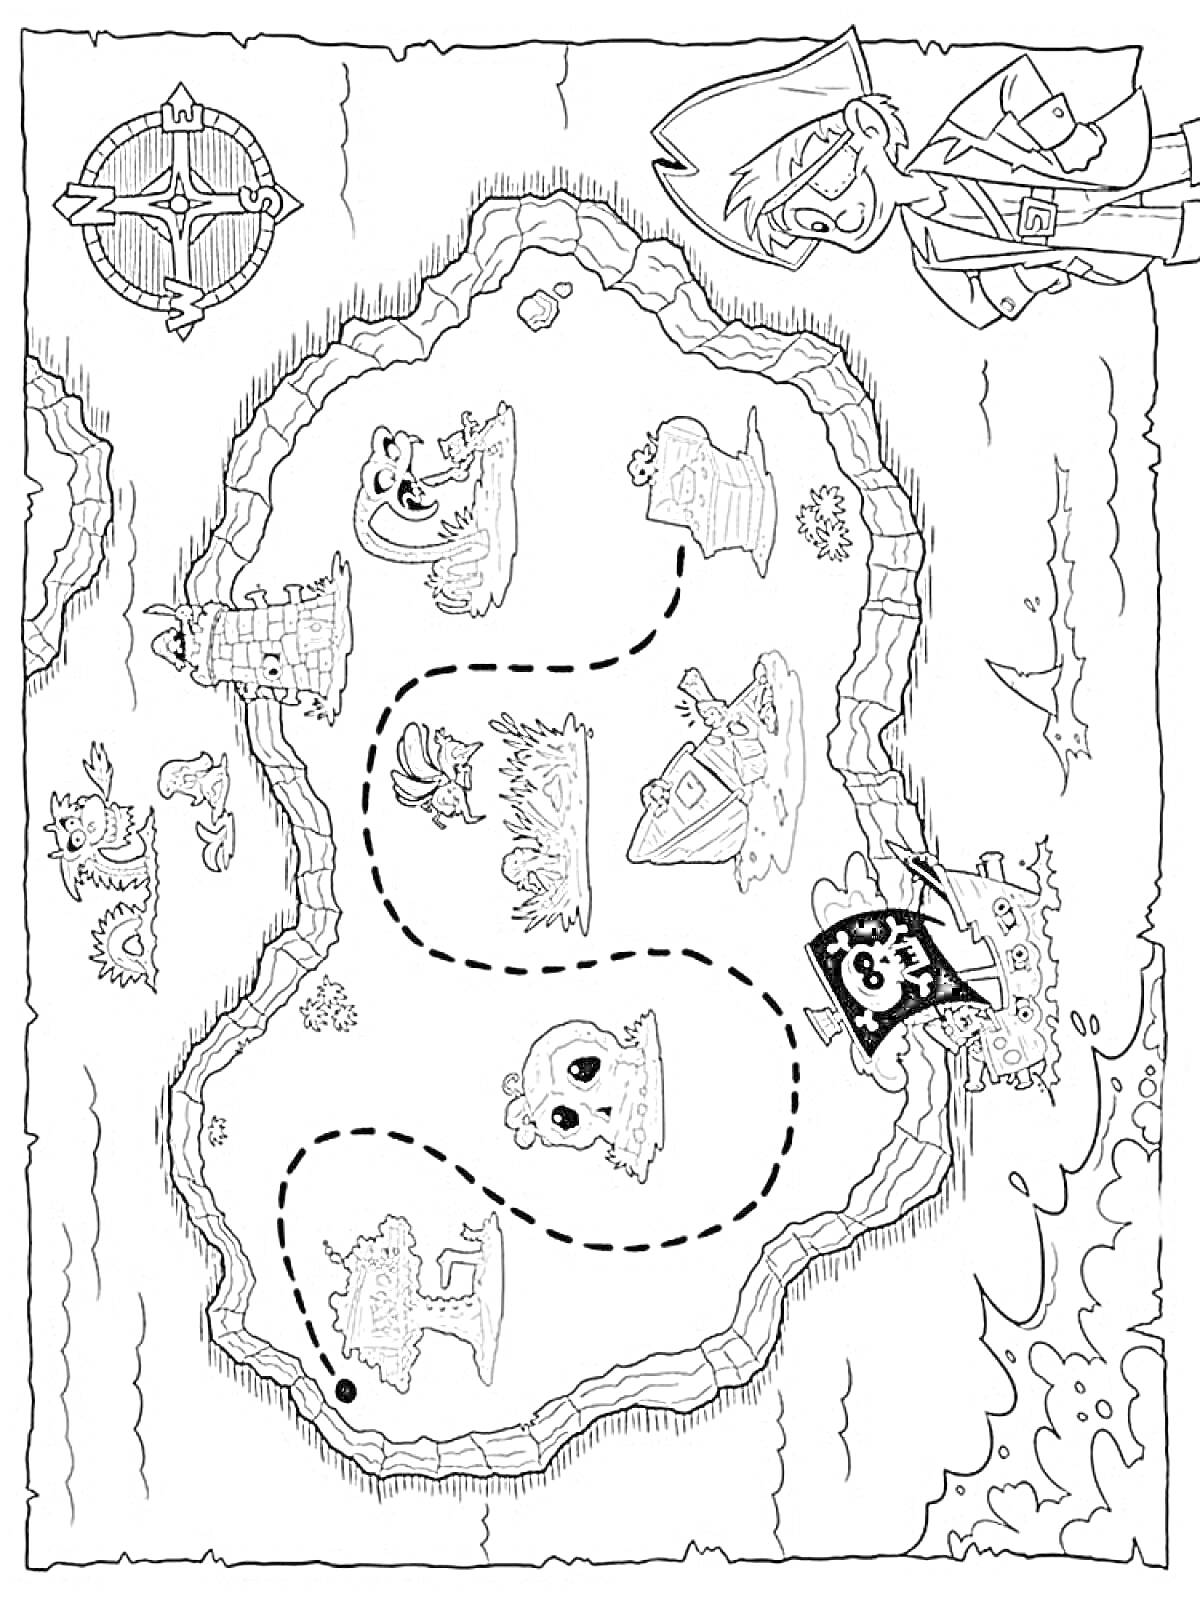 Раскраска Карта сокровищ с пиратами, сундуками, черепами, животными и разными ориентирами